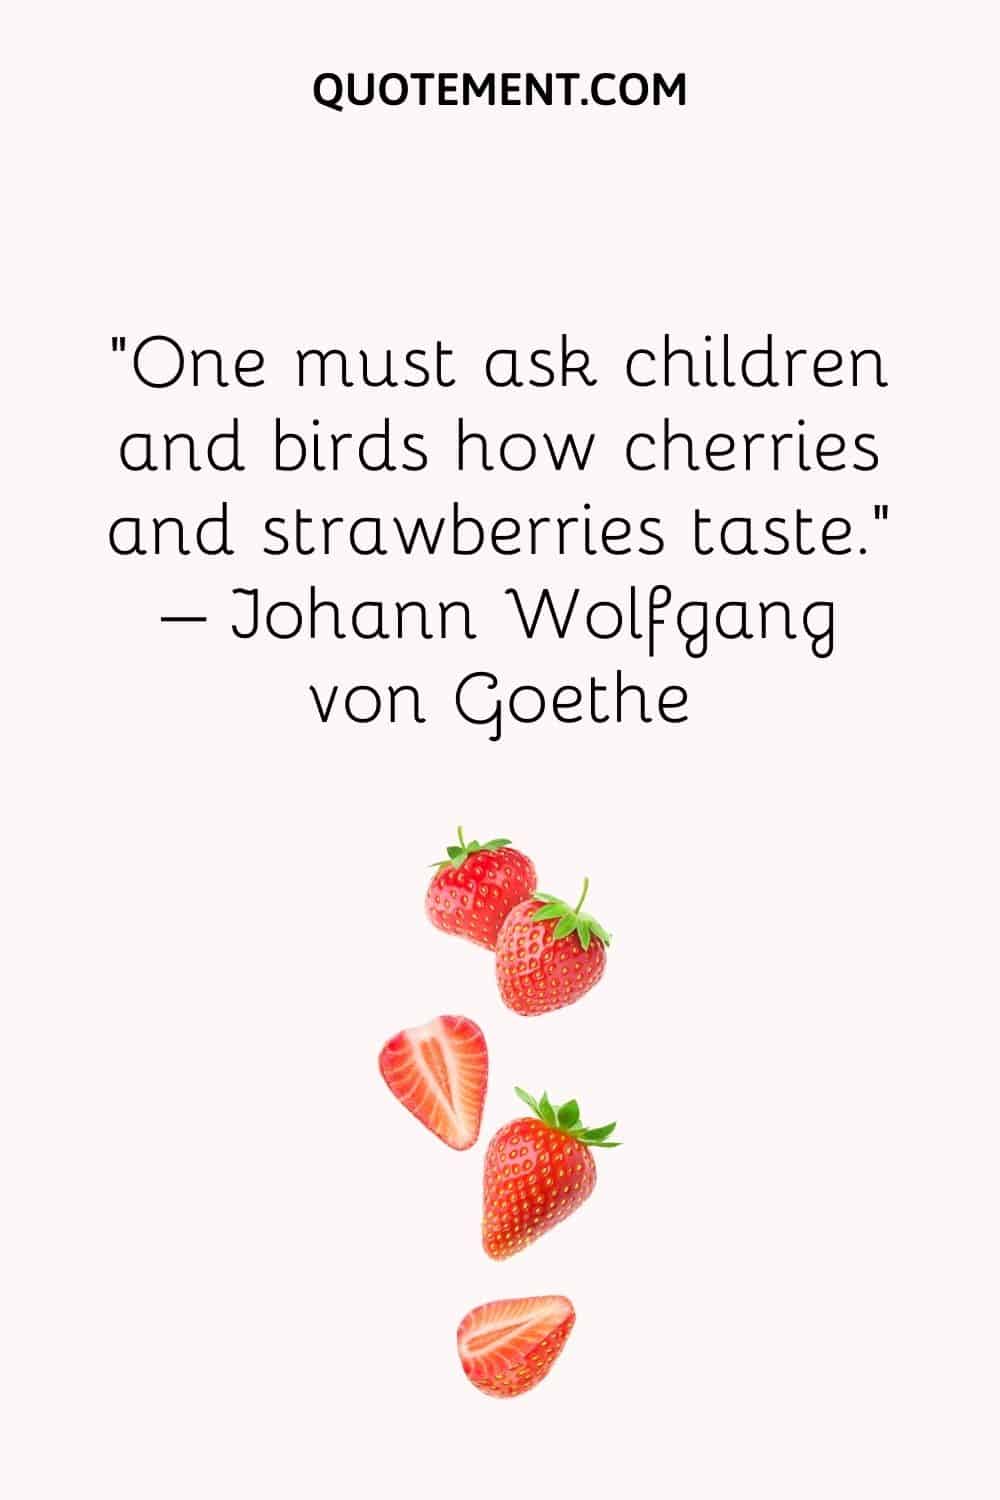 Hay que preguntar a los niños y a los pájaros a qué saben las cerezas y las fresas